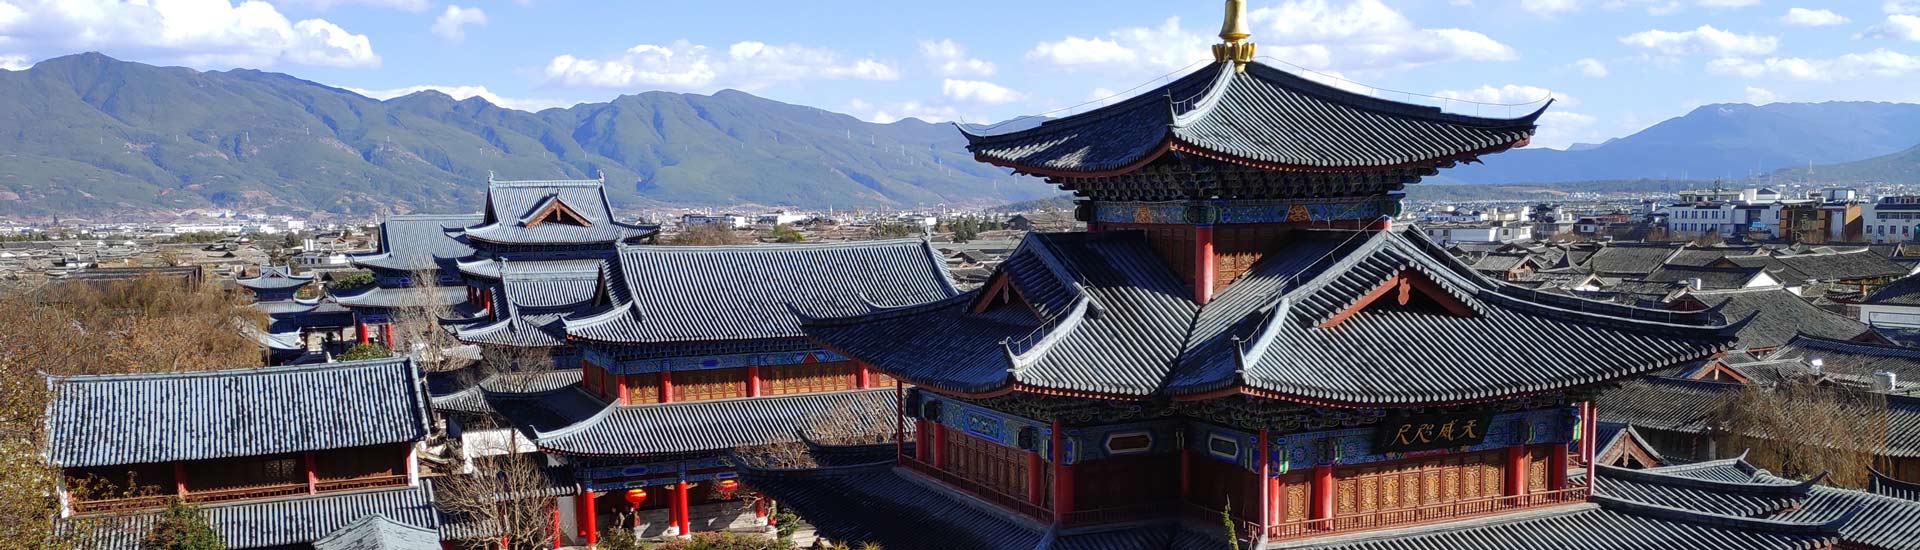 7 Days Classic Tour to Kunming-Dali-Lijiang-Shangri-la